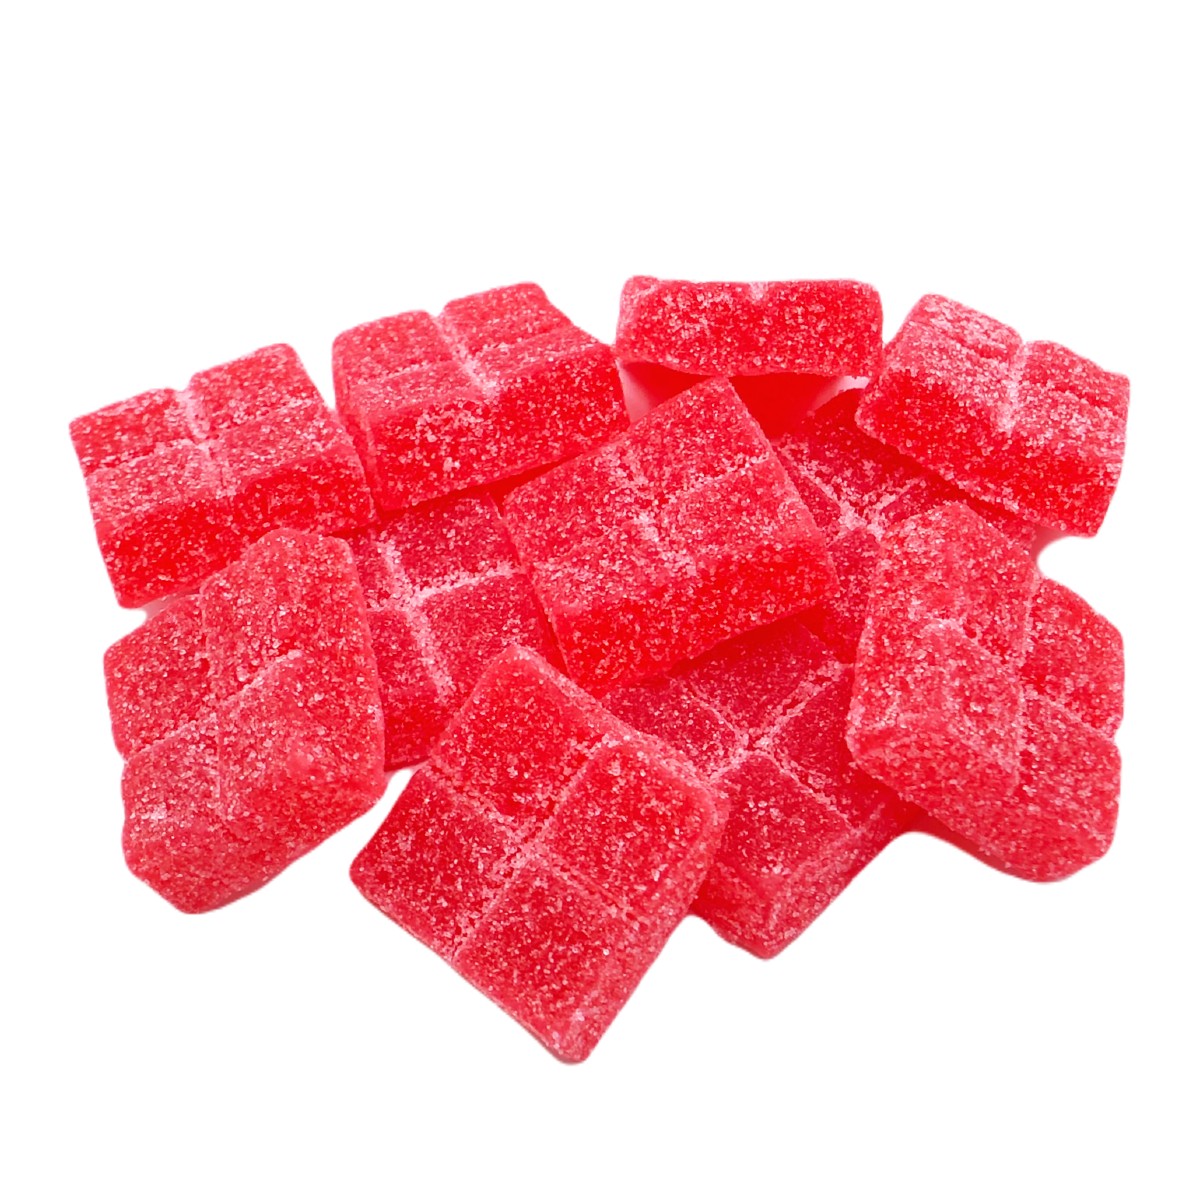 Fruit Punch Flavor Infused Gummies | Delta 9 Edibles | 10PCS